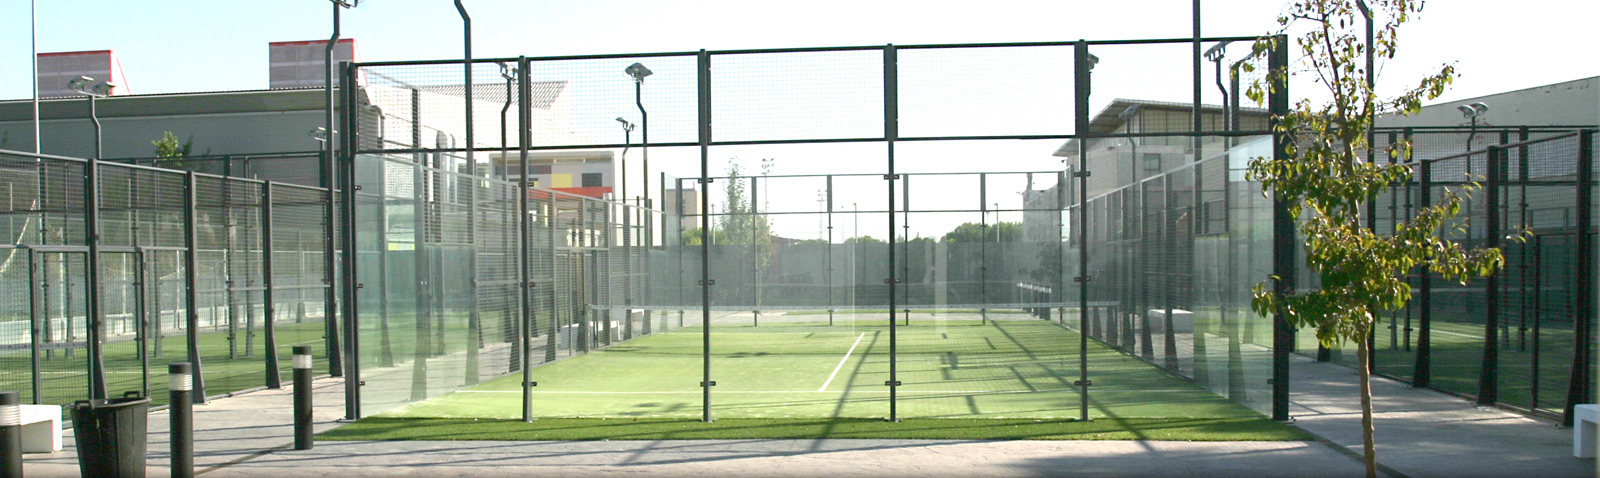 Greencourt - Especialistas en fabricación de pistas de Tenis, Pádel y Fútbol